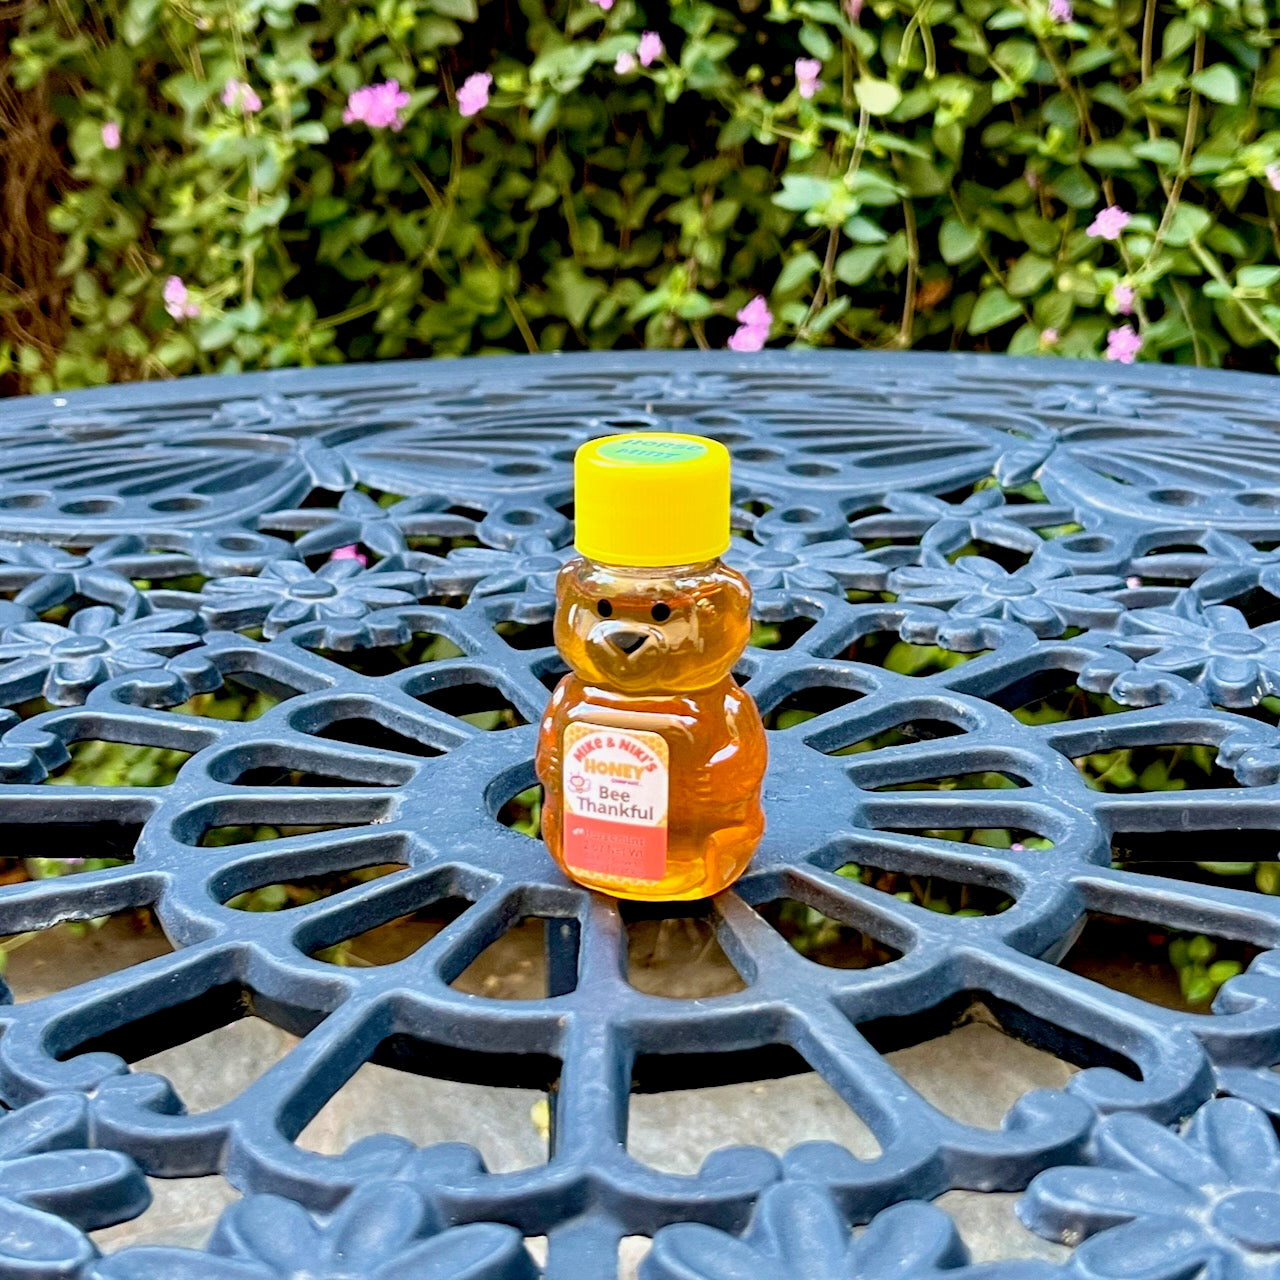 Horsemint Honey